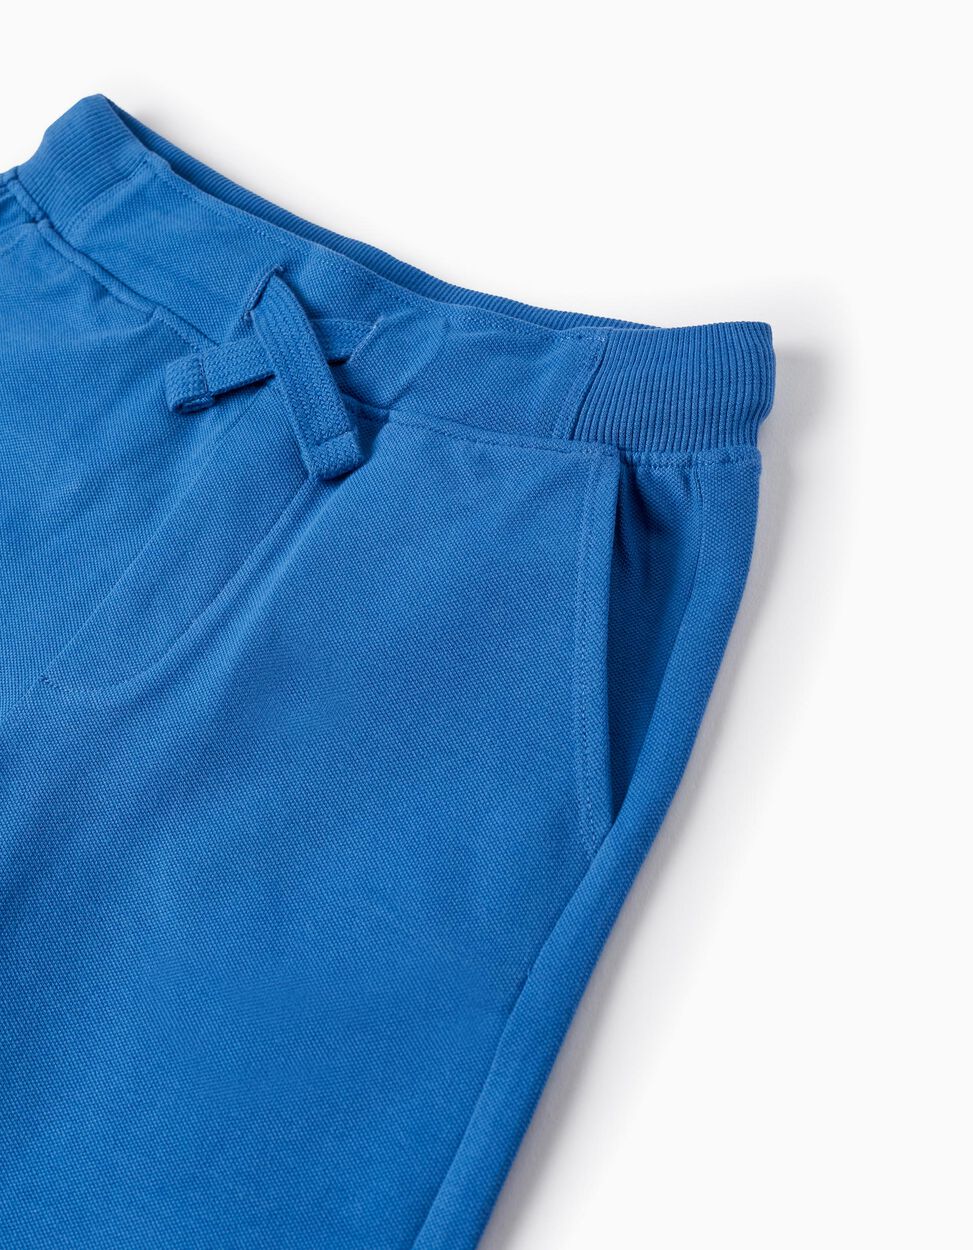 Comprar Online Shorts de Piqué de Algodón para Niño, Azul